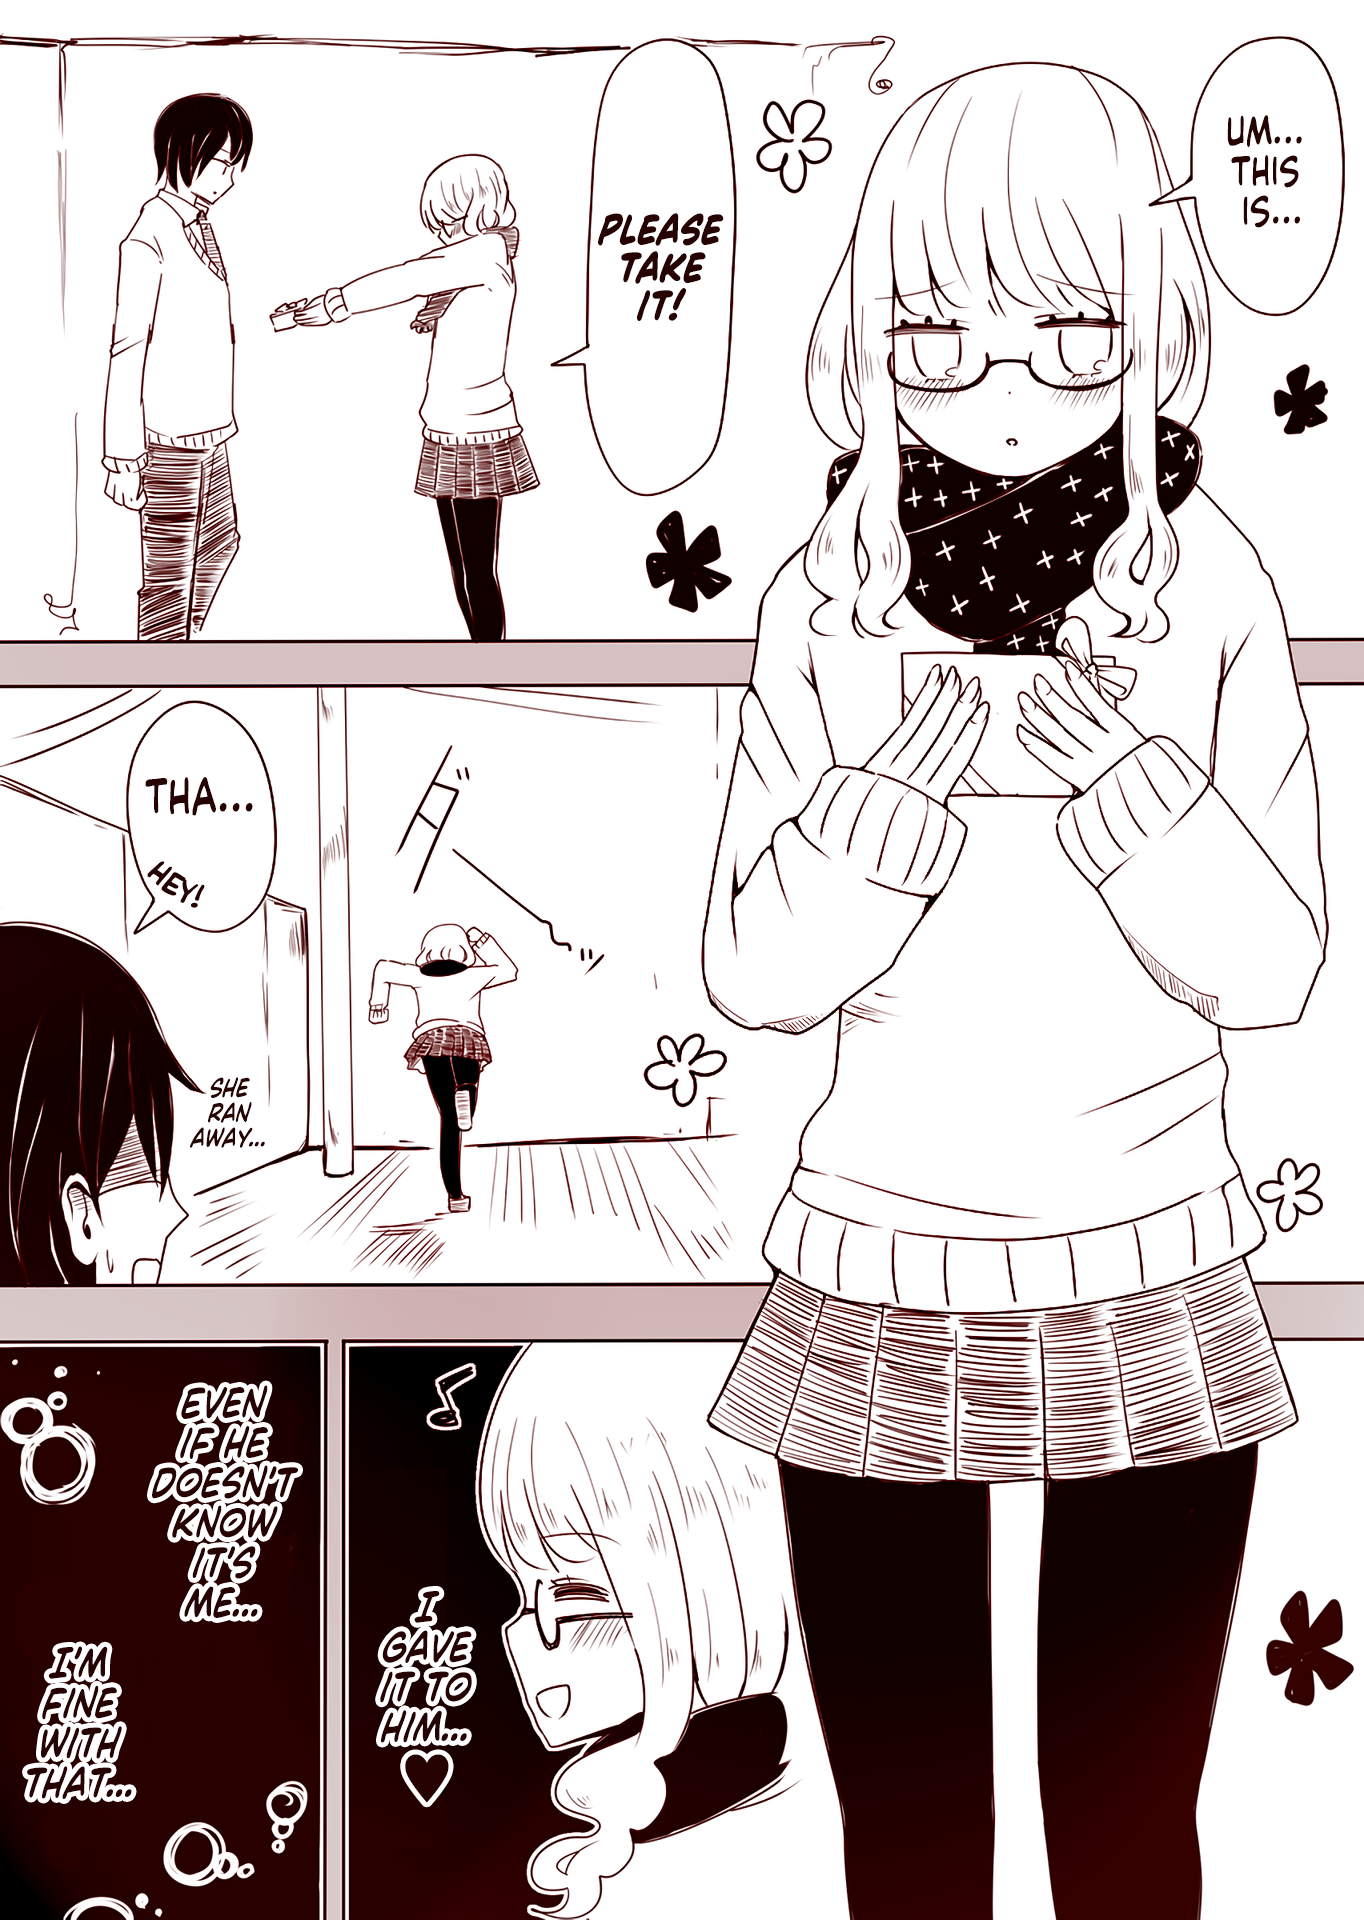 A Crossdresser's Valentine manga